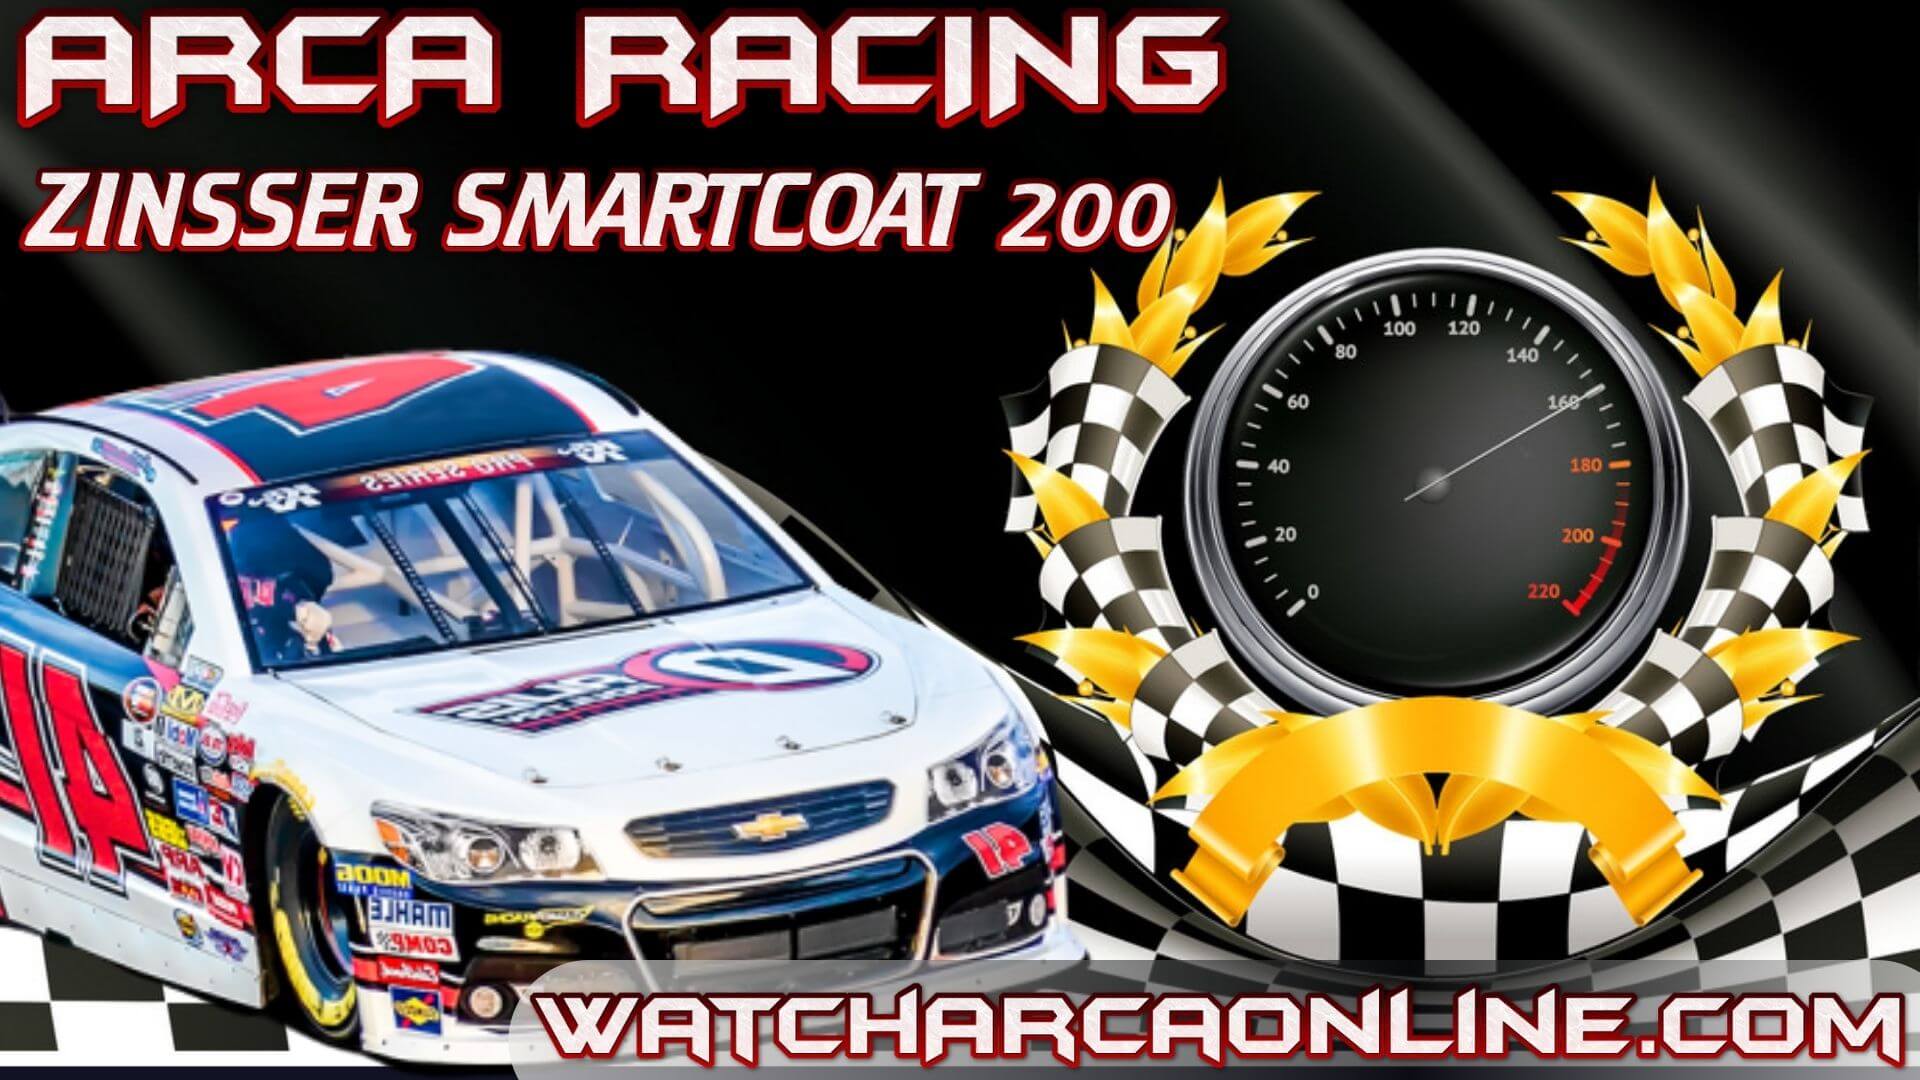 zinsser-smartcoat-200-arca-racing-live-stream